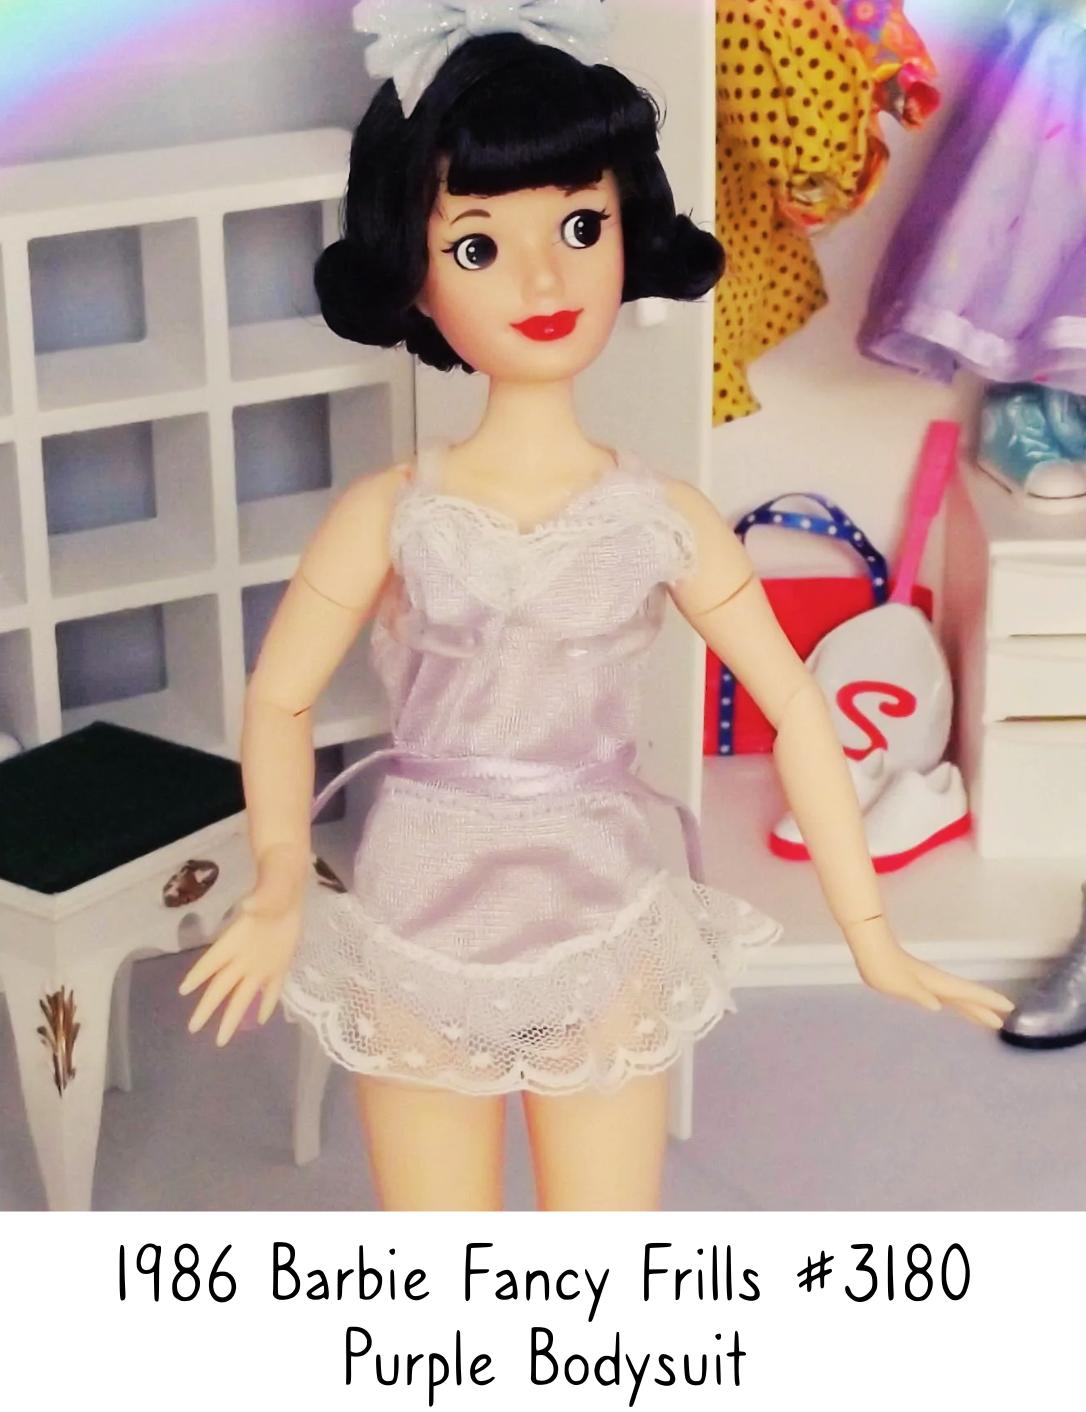 1986 Barbie Fashion Doll Fancy Frills #3180